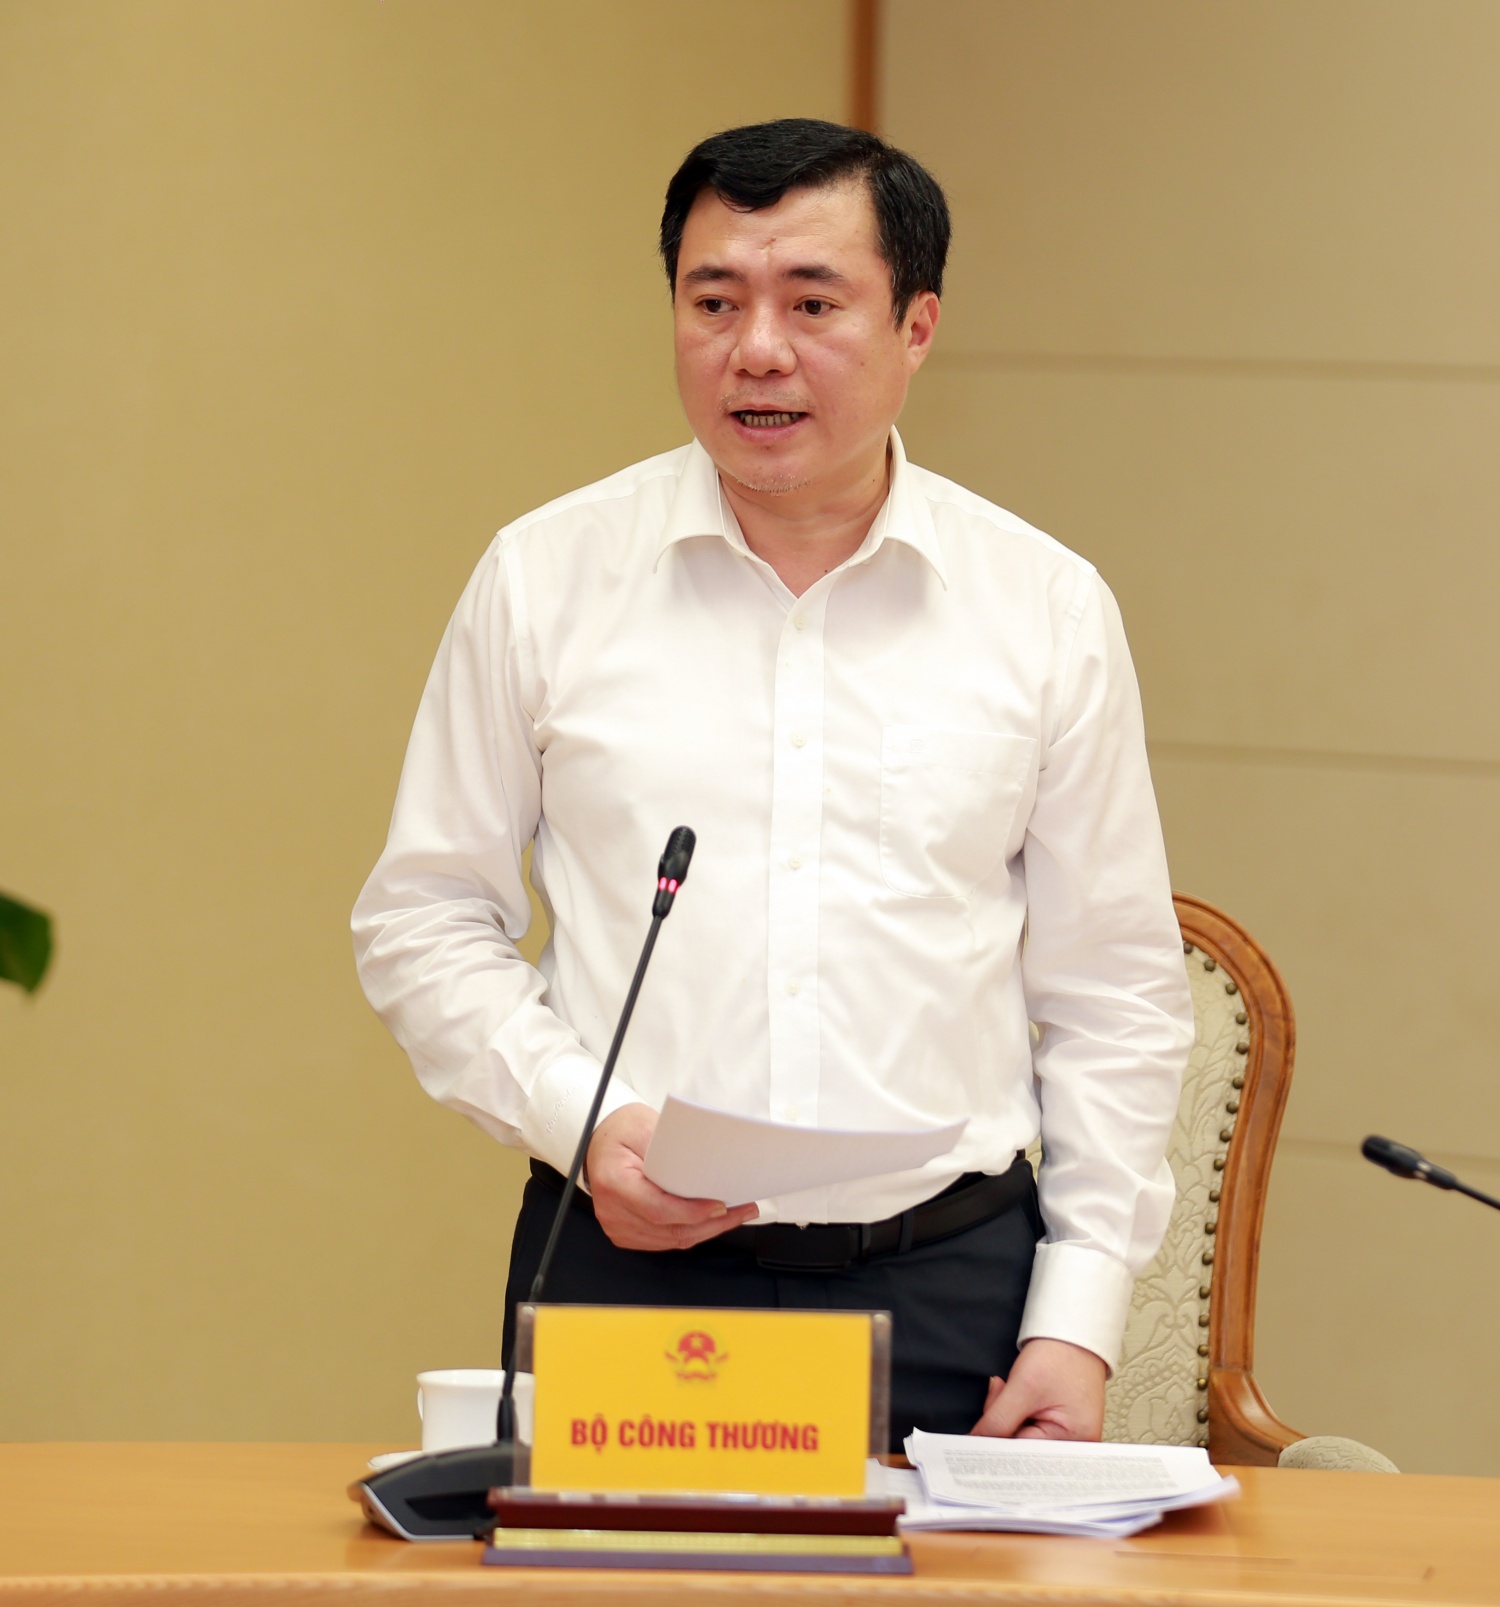 Thứ trưởng Bộ Công Thương Nguyễn Sinh Nhật Tân phát biểu tại cuộc họp